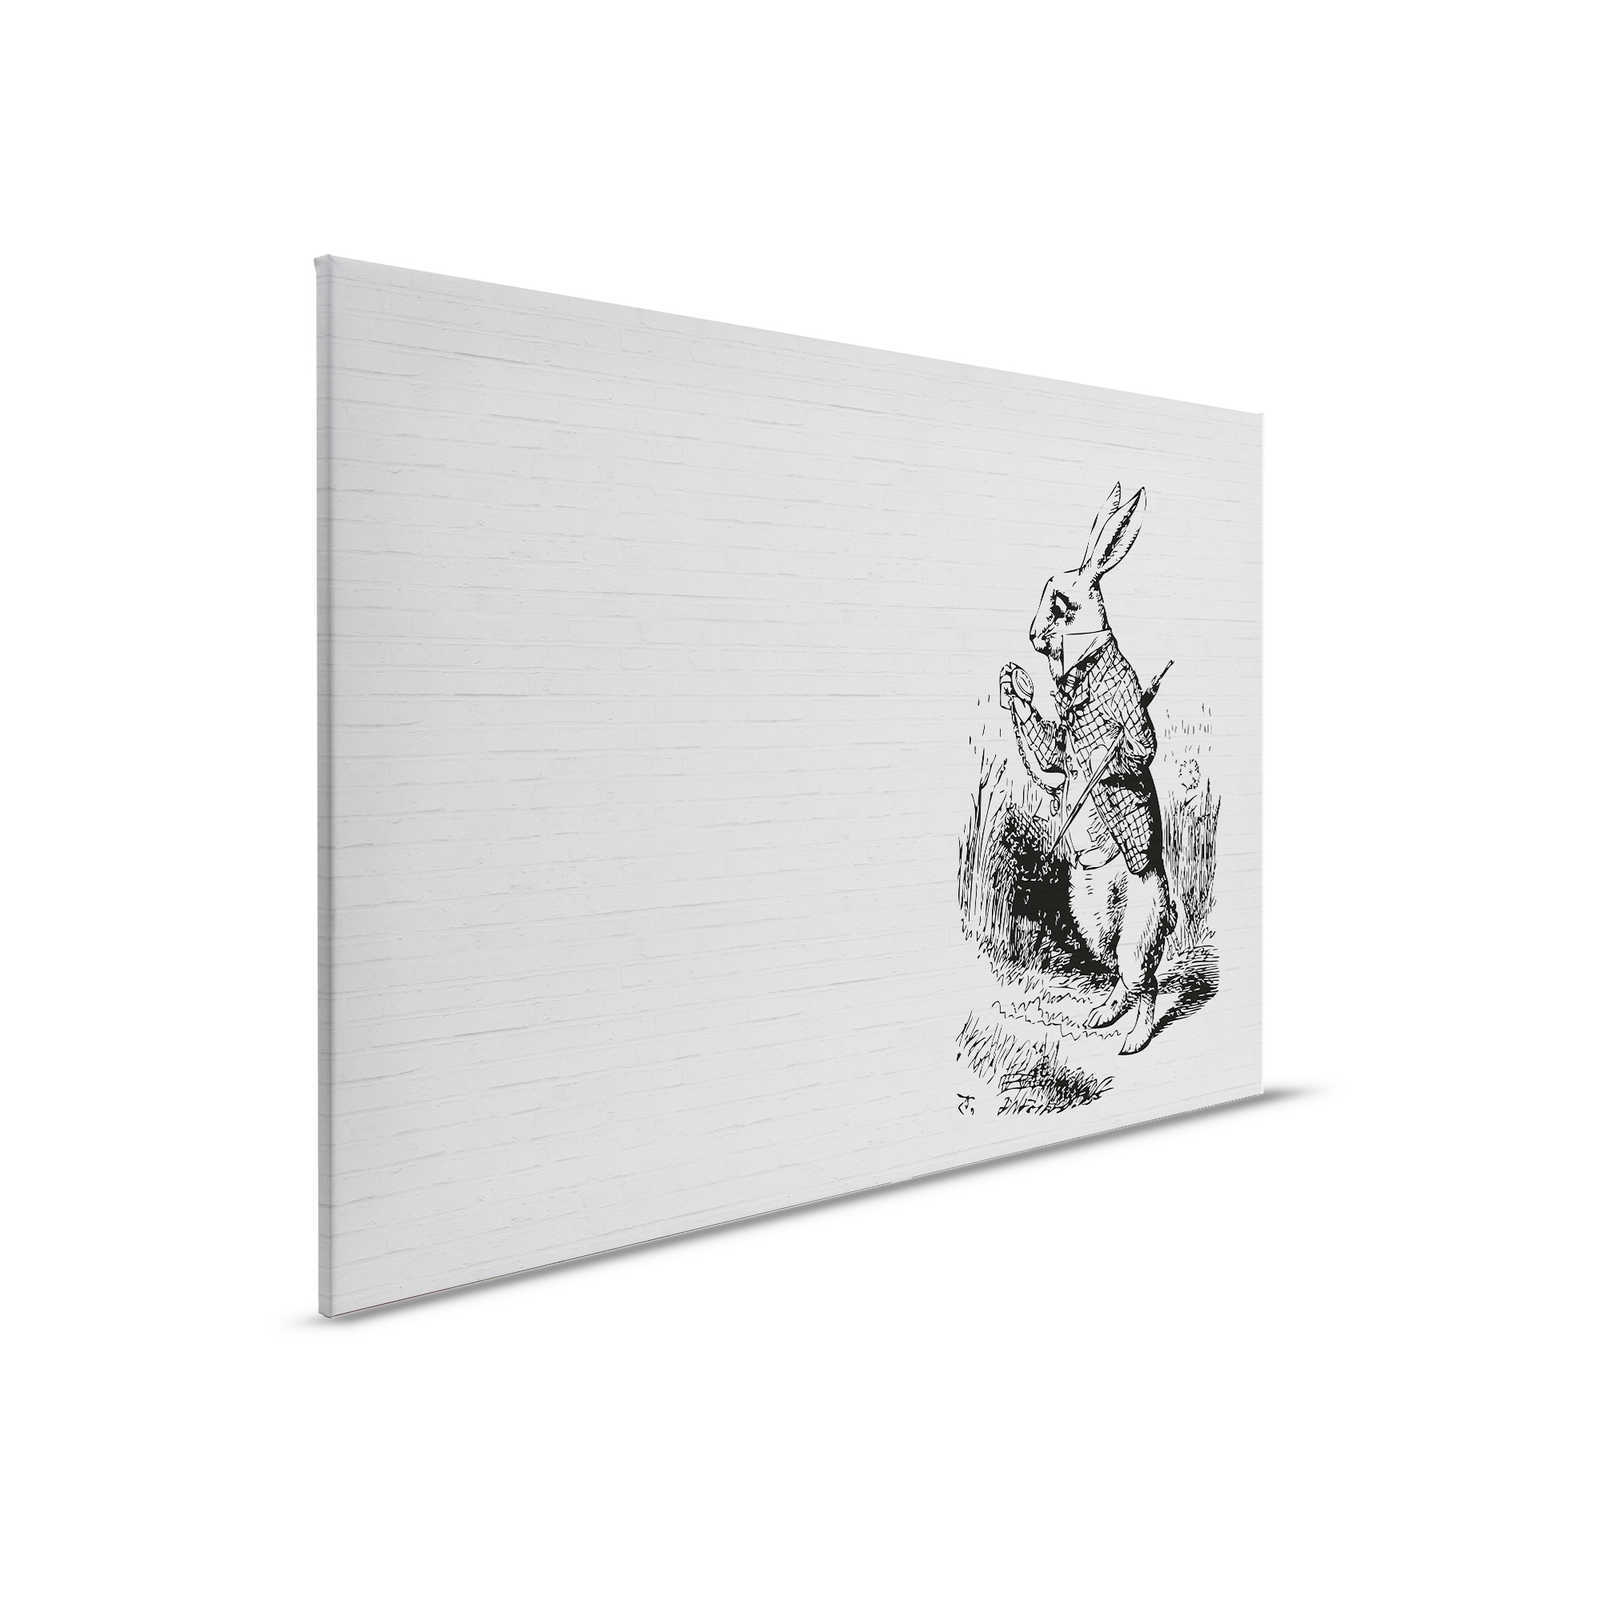 Schwarz-Weiße Leinwandbild Steinoptik & Hase mit Gehstock – 0,90 m x 0,60 m
